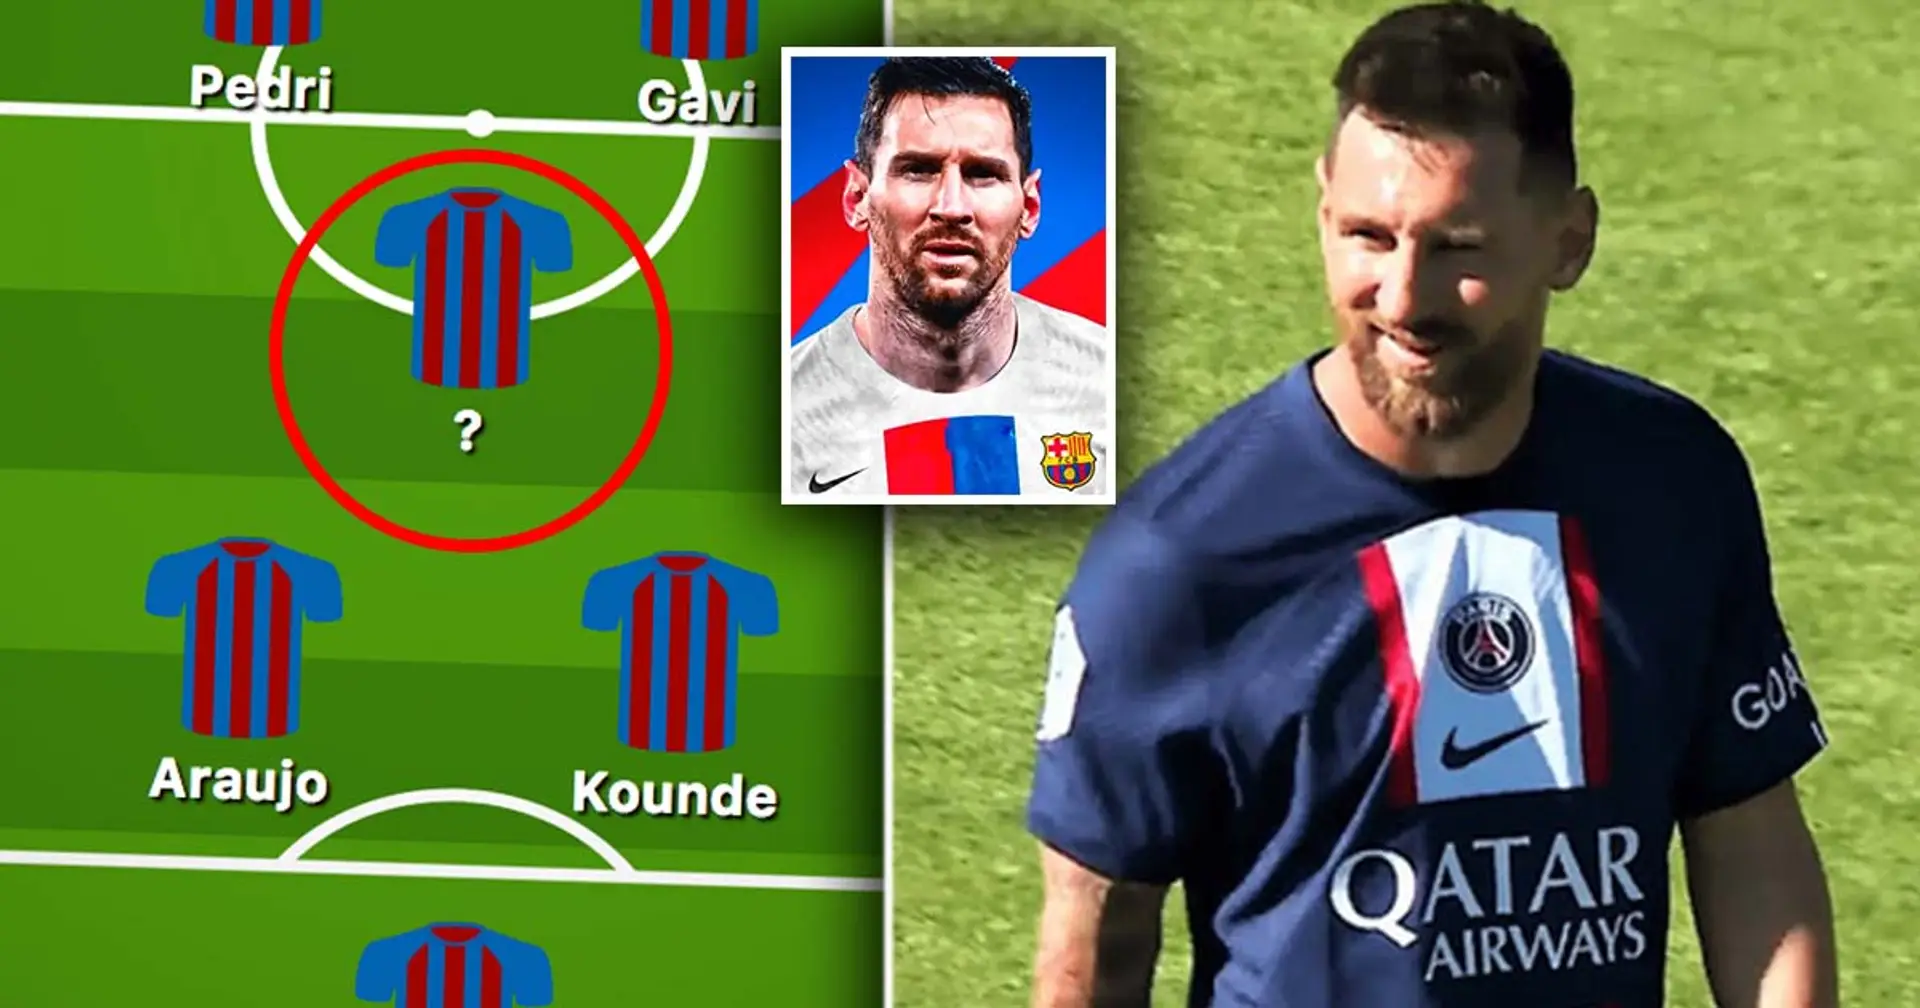 Deux postes supplémentaires que le Barça doit "renforcer" si Messi revient